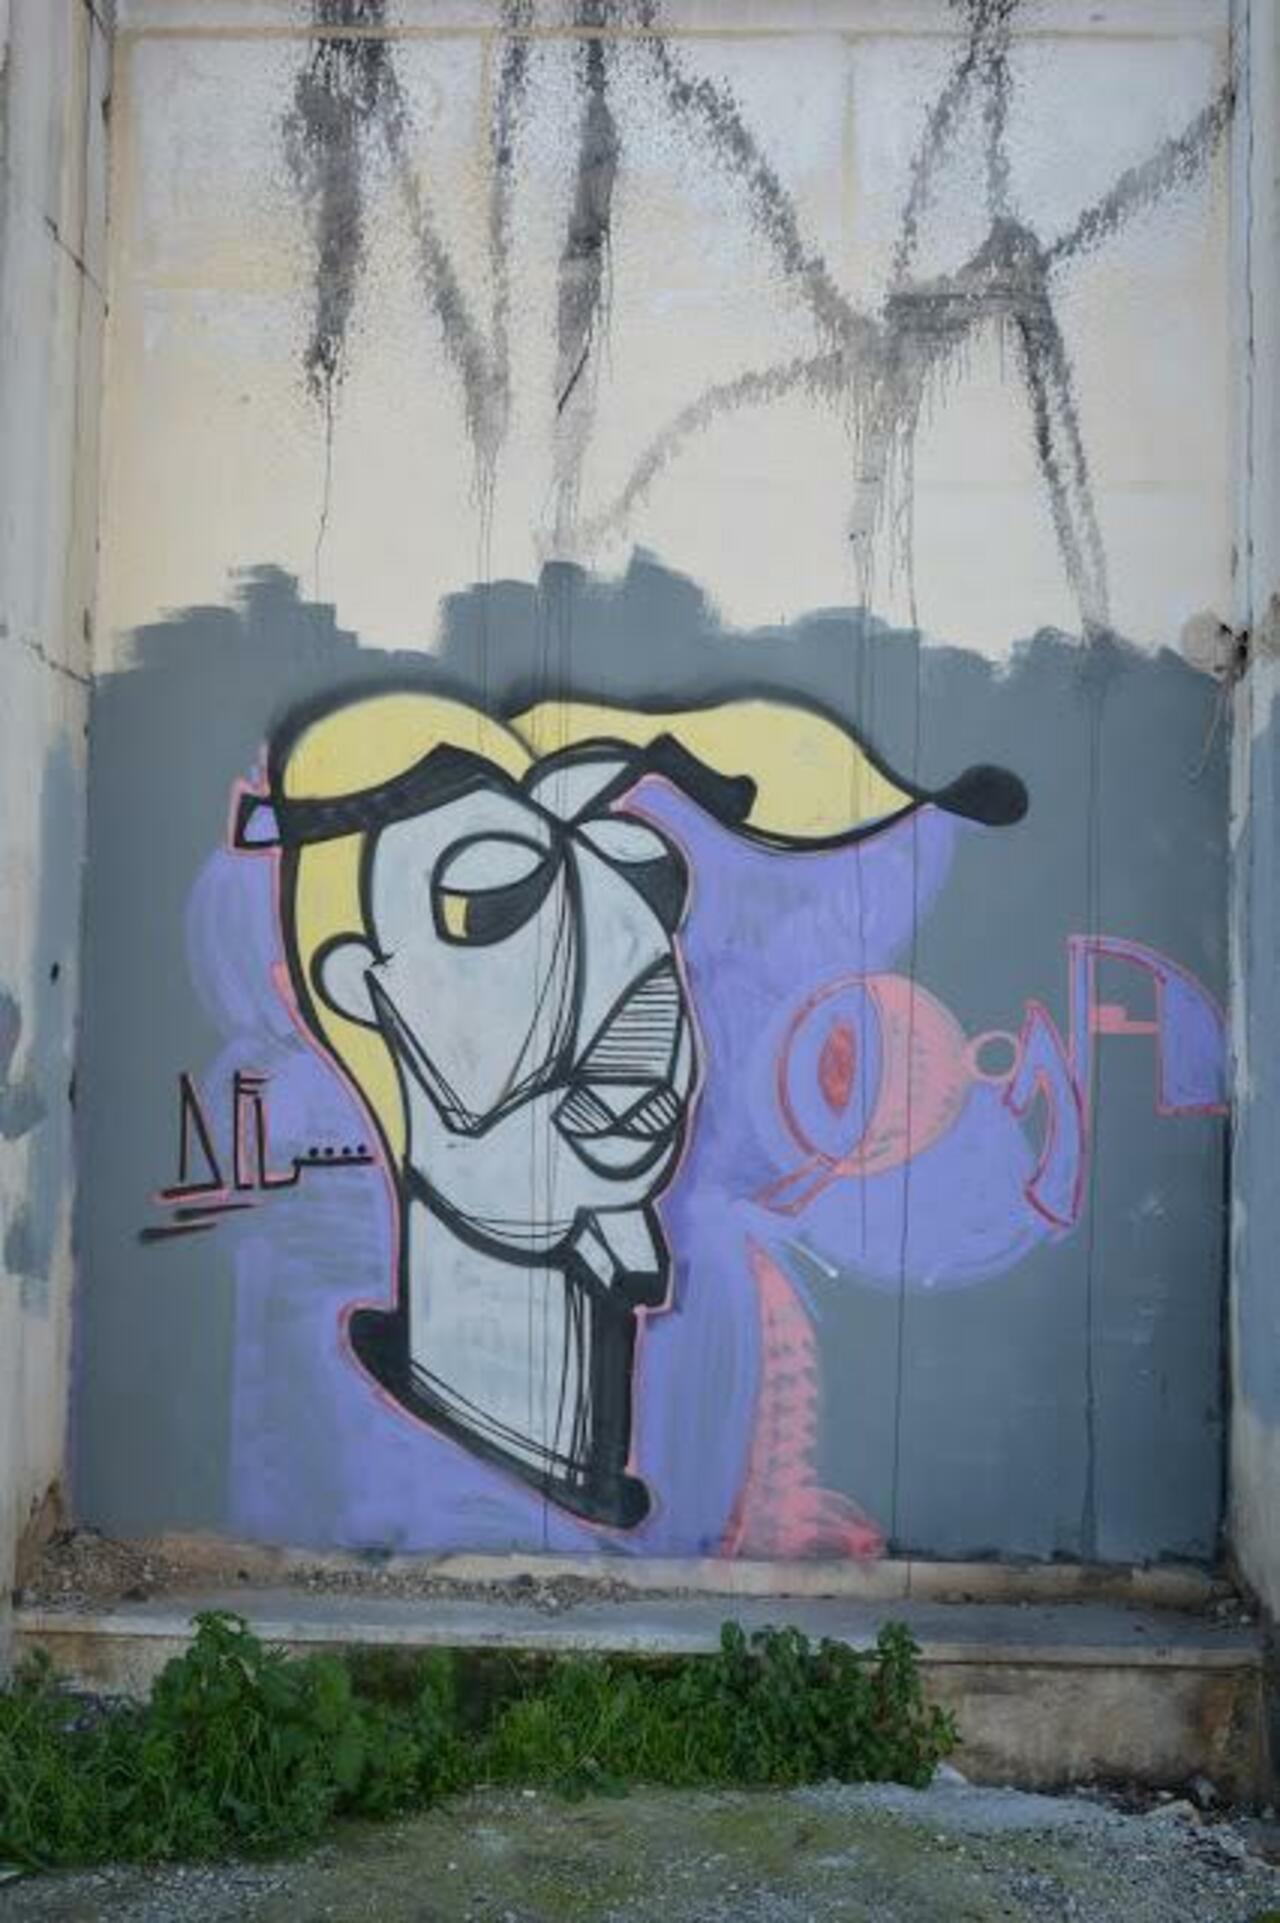 4/10/15, Λεωφόρος Αθηνών 35 Αθήνα - 2 φωτό #art #streetart #graffiti #Athens If you want t… http://ift.tt/1mxu95z http://t.co/lRJYa3XGTy